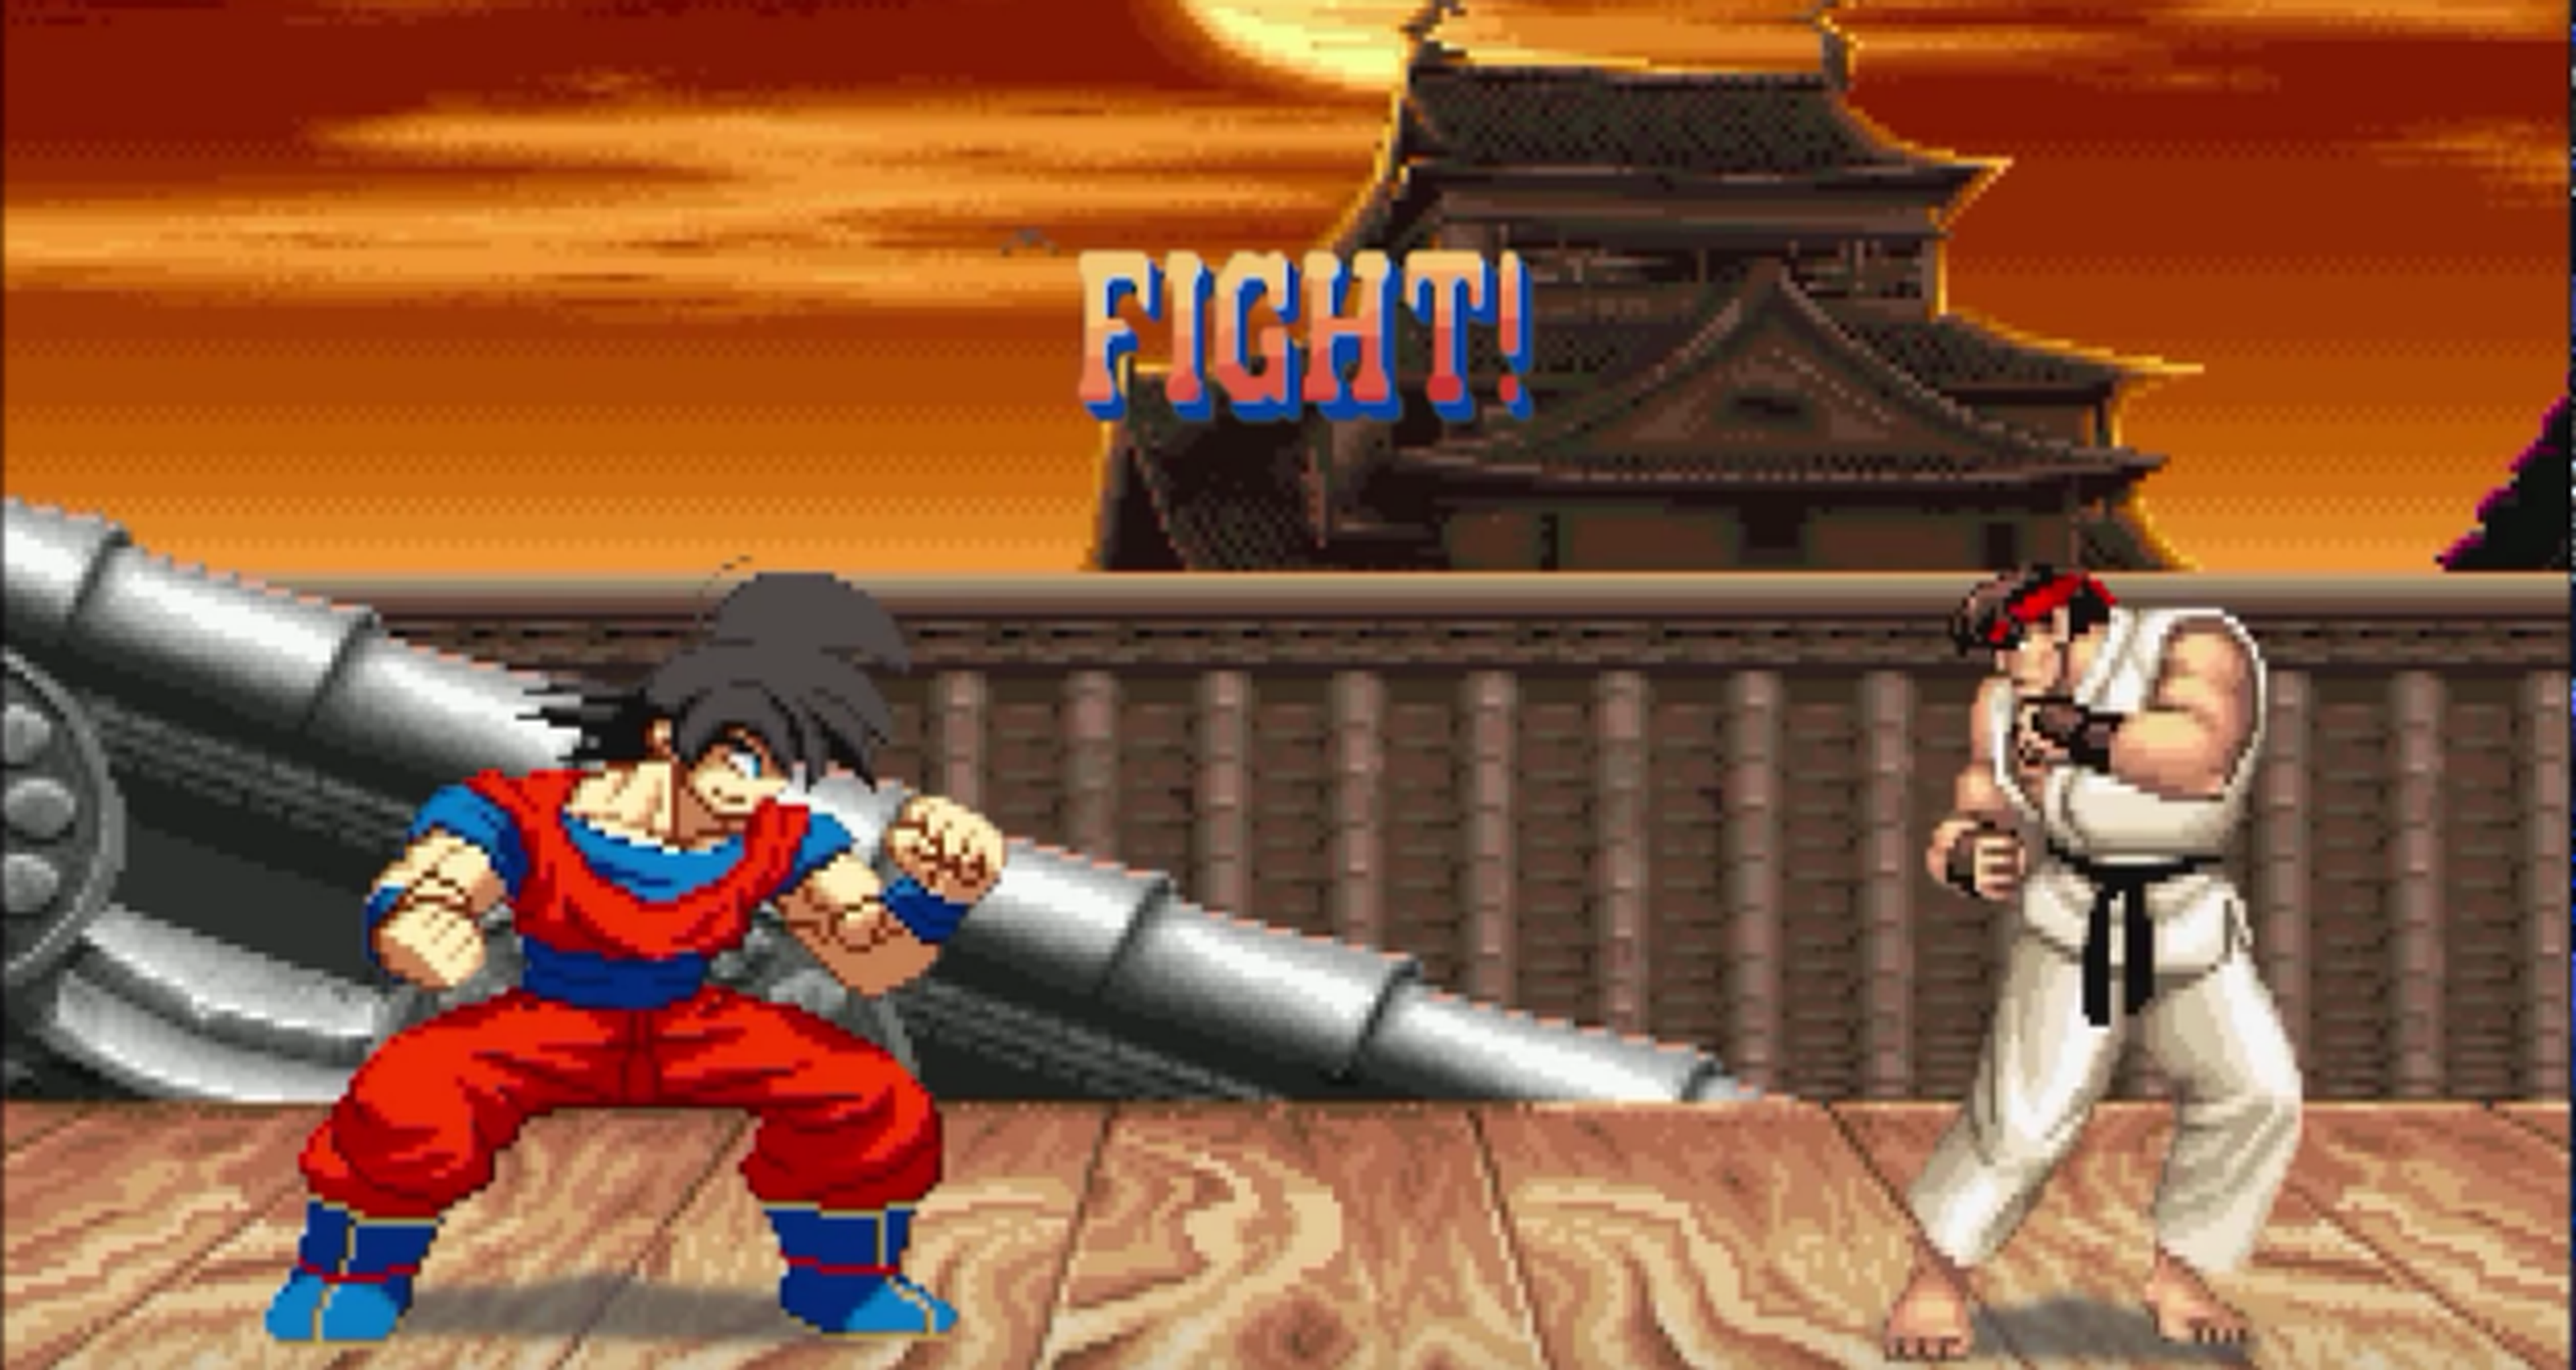 Goku vs personajes de Street Fighter II, ¿quién ganará la pelea?